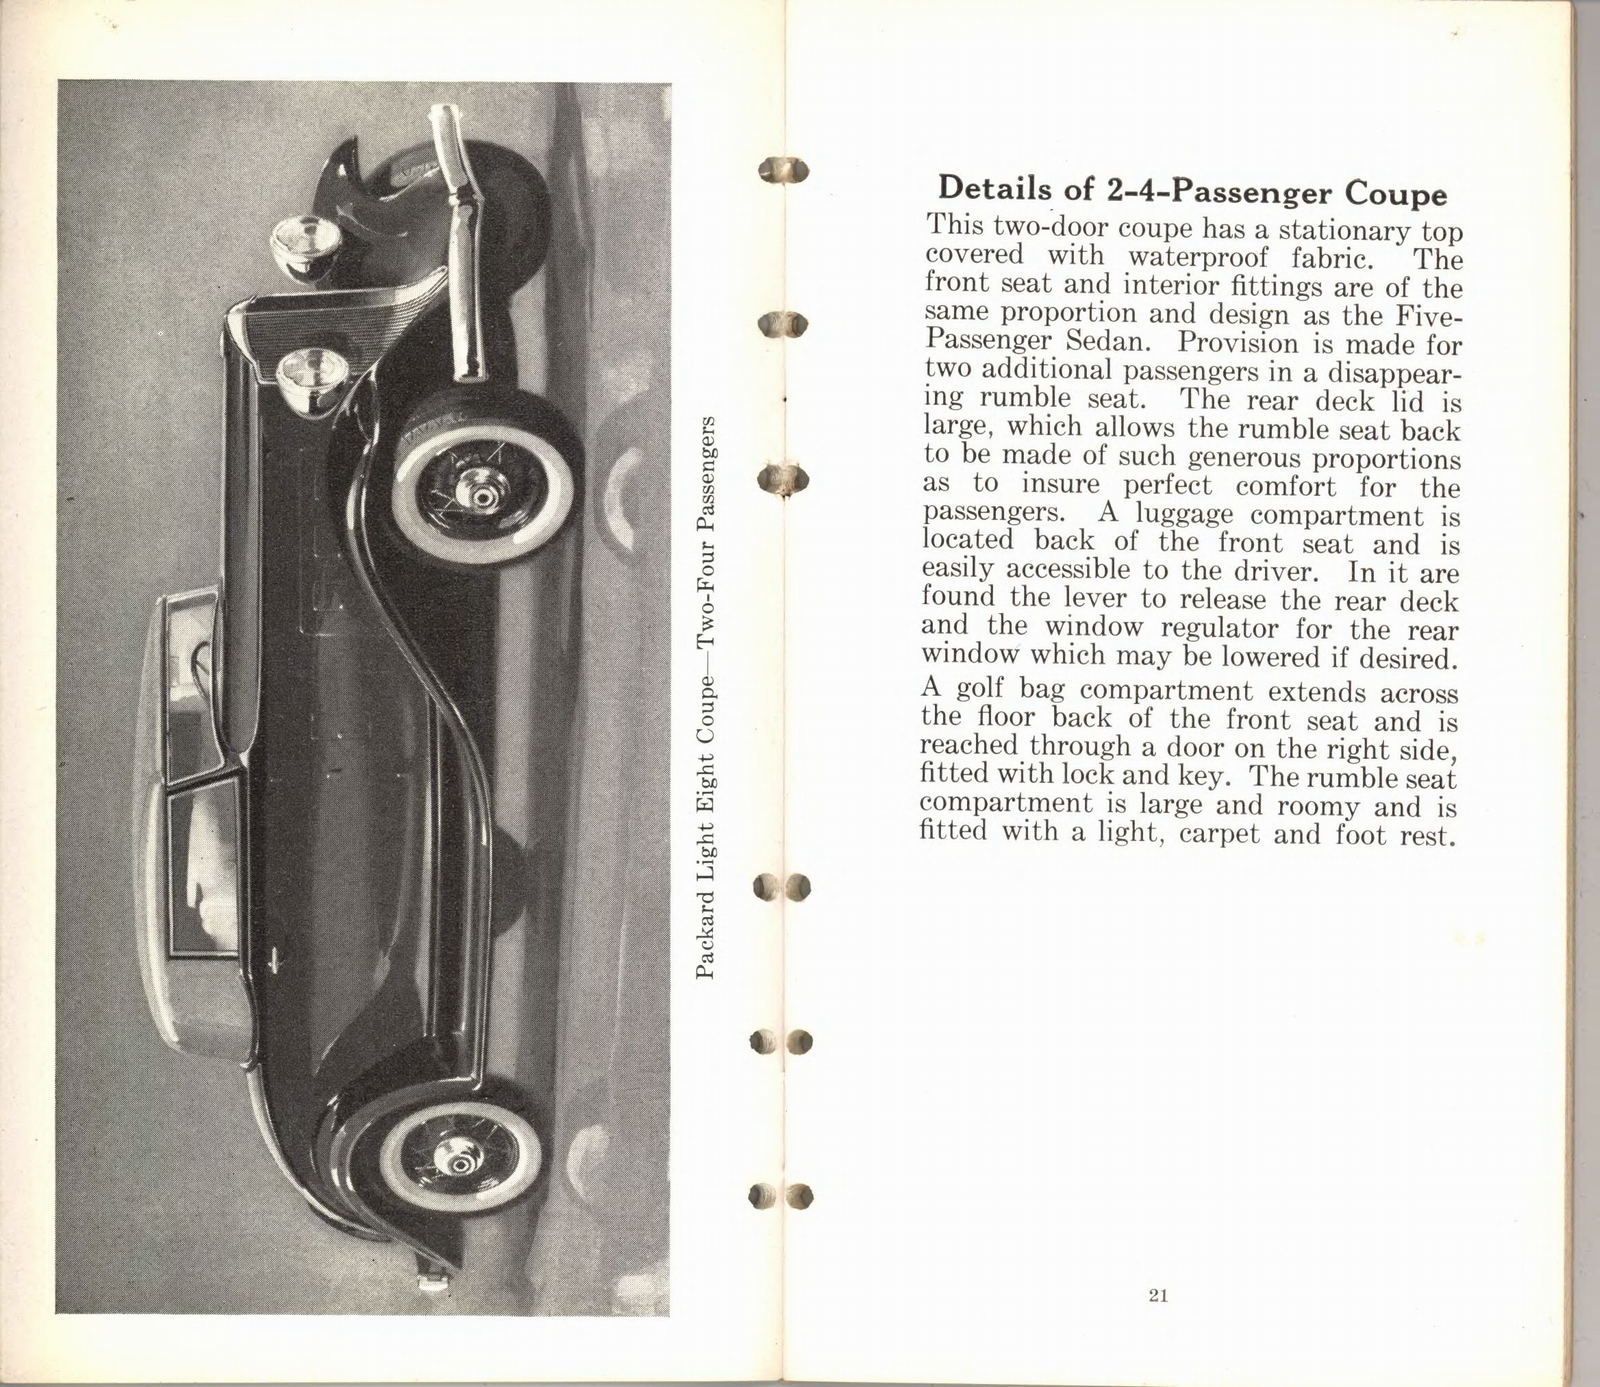 n_1932 Packard Light Eight Facts Book-20-21.jpg